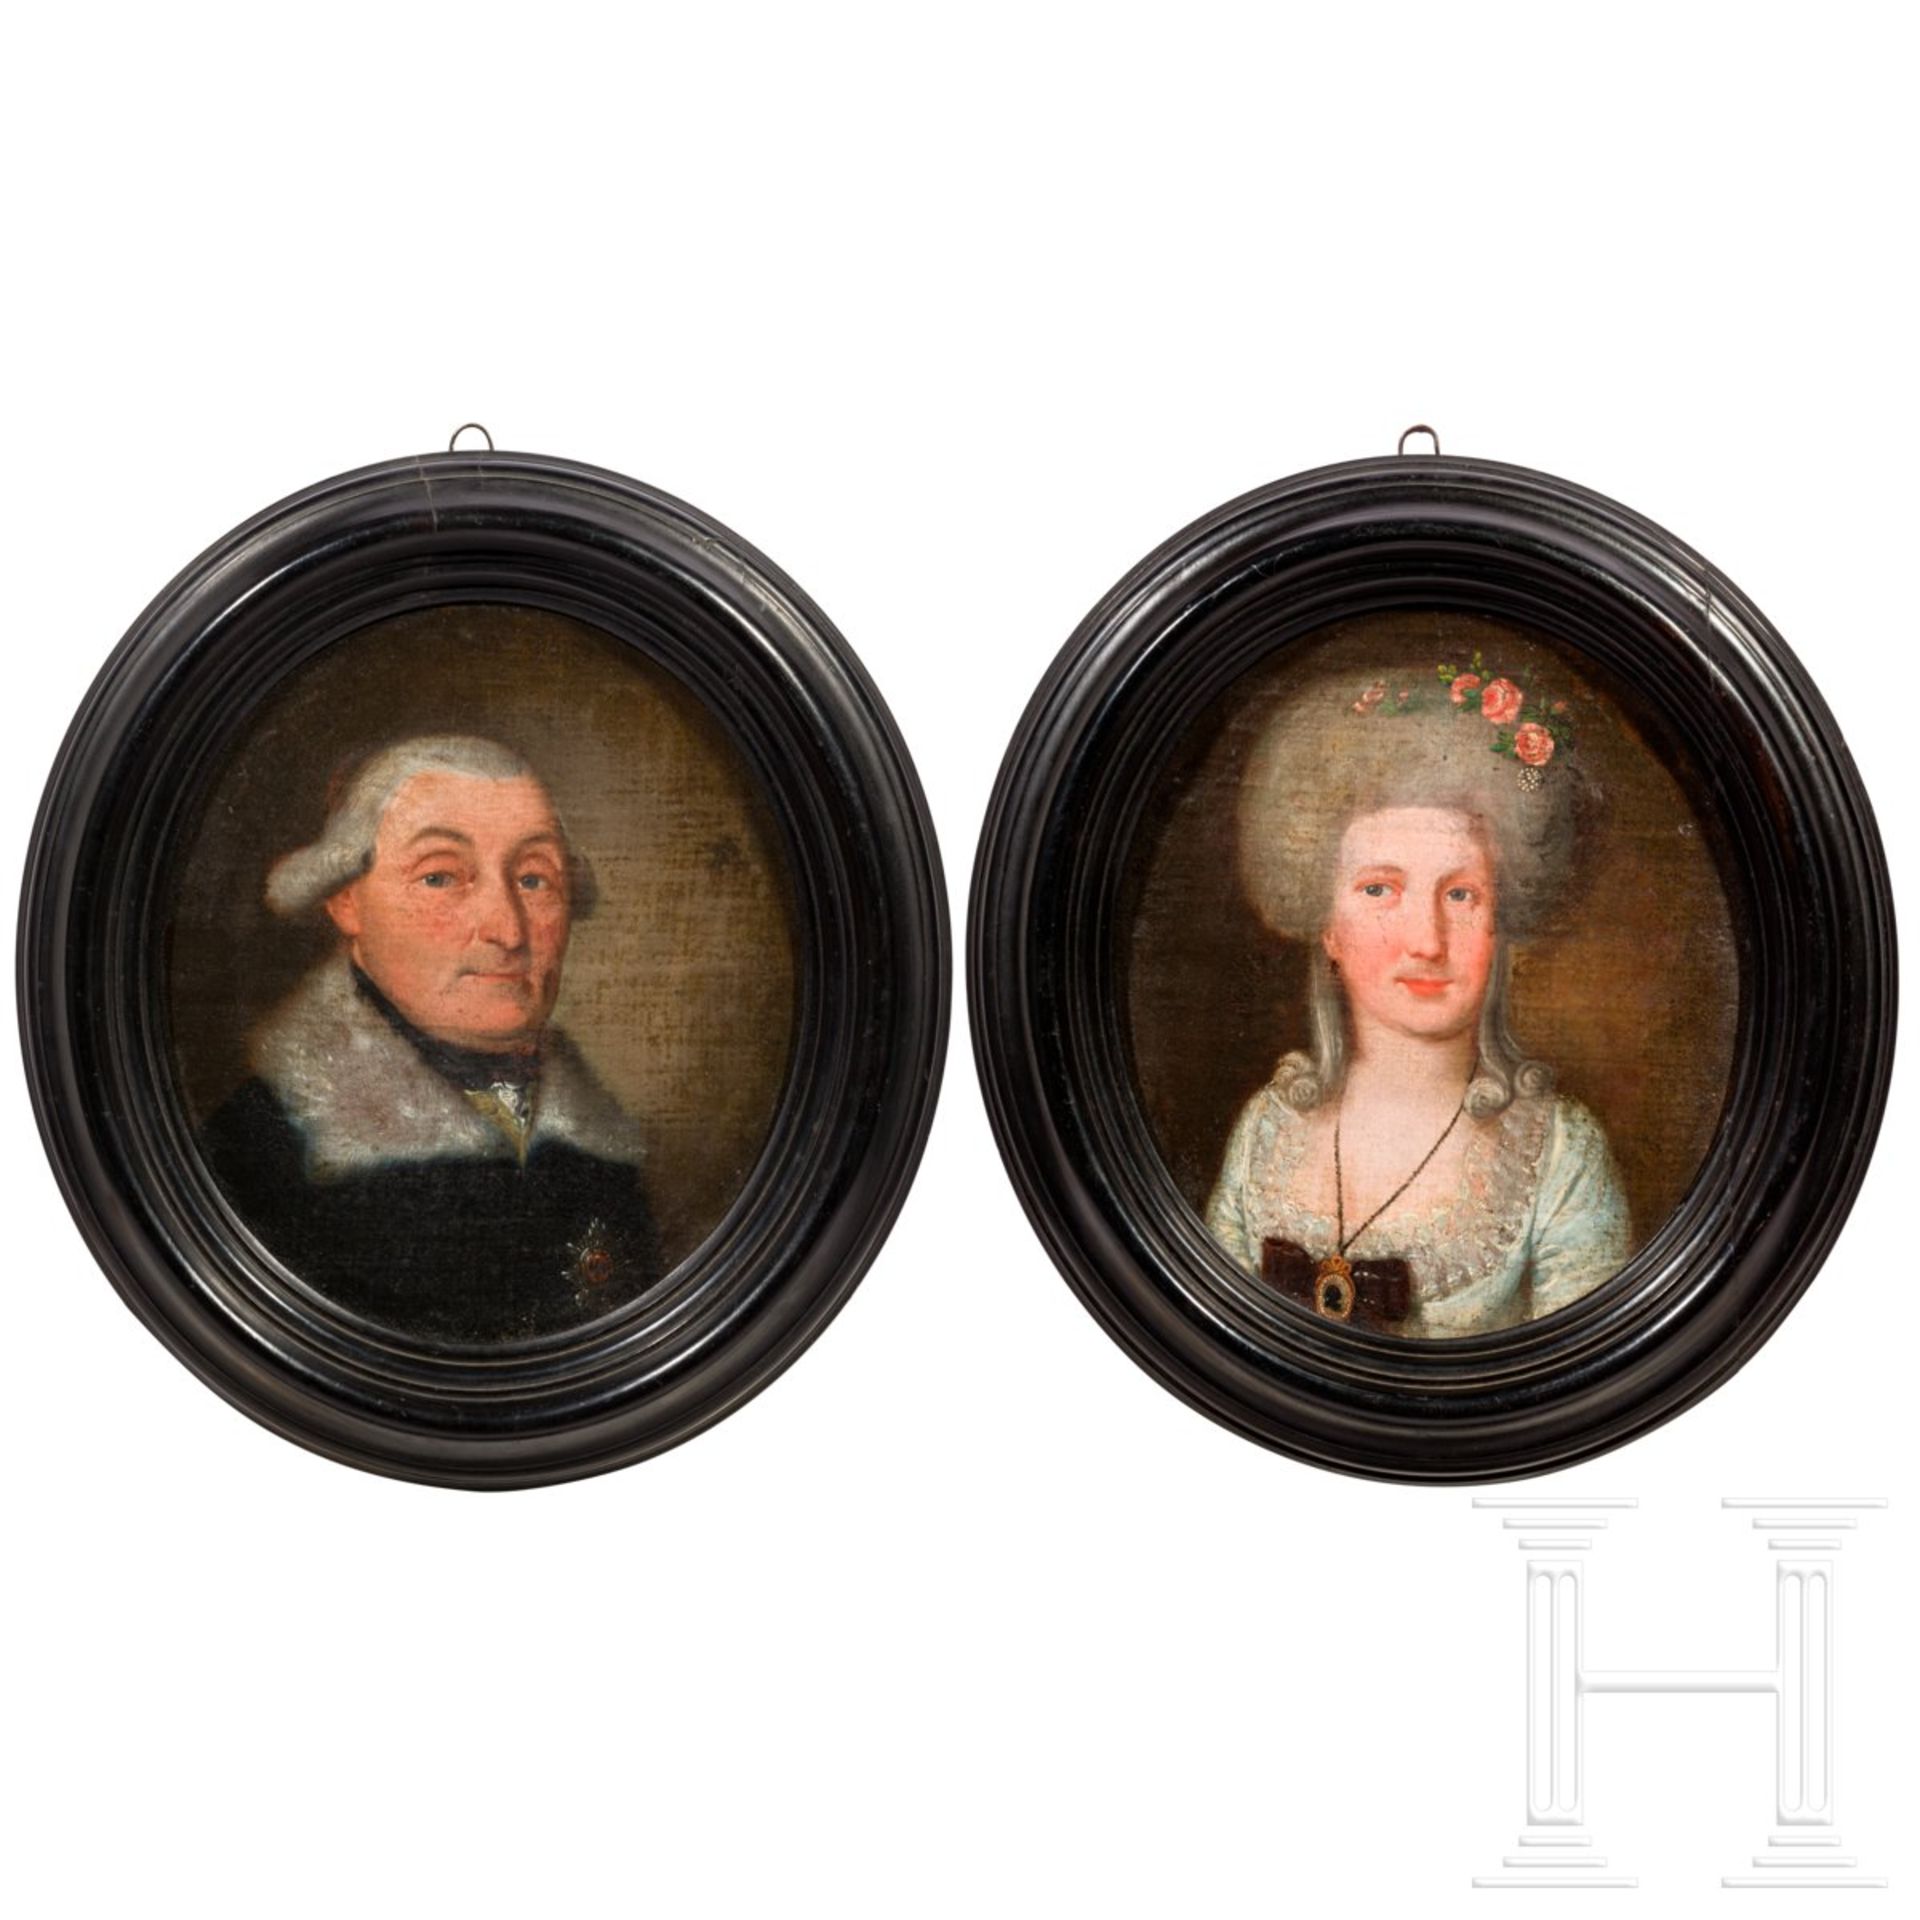 Bildnisse des preußischen Generals von Dalwig und seiner Ehefrau, um 1780